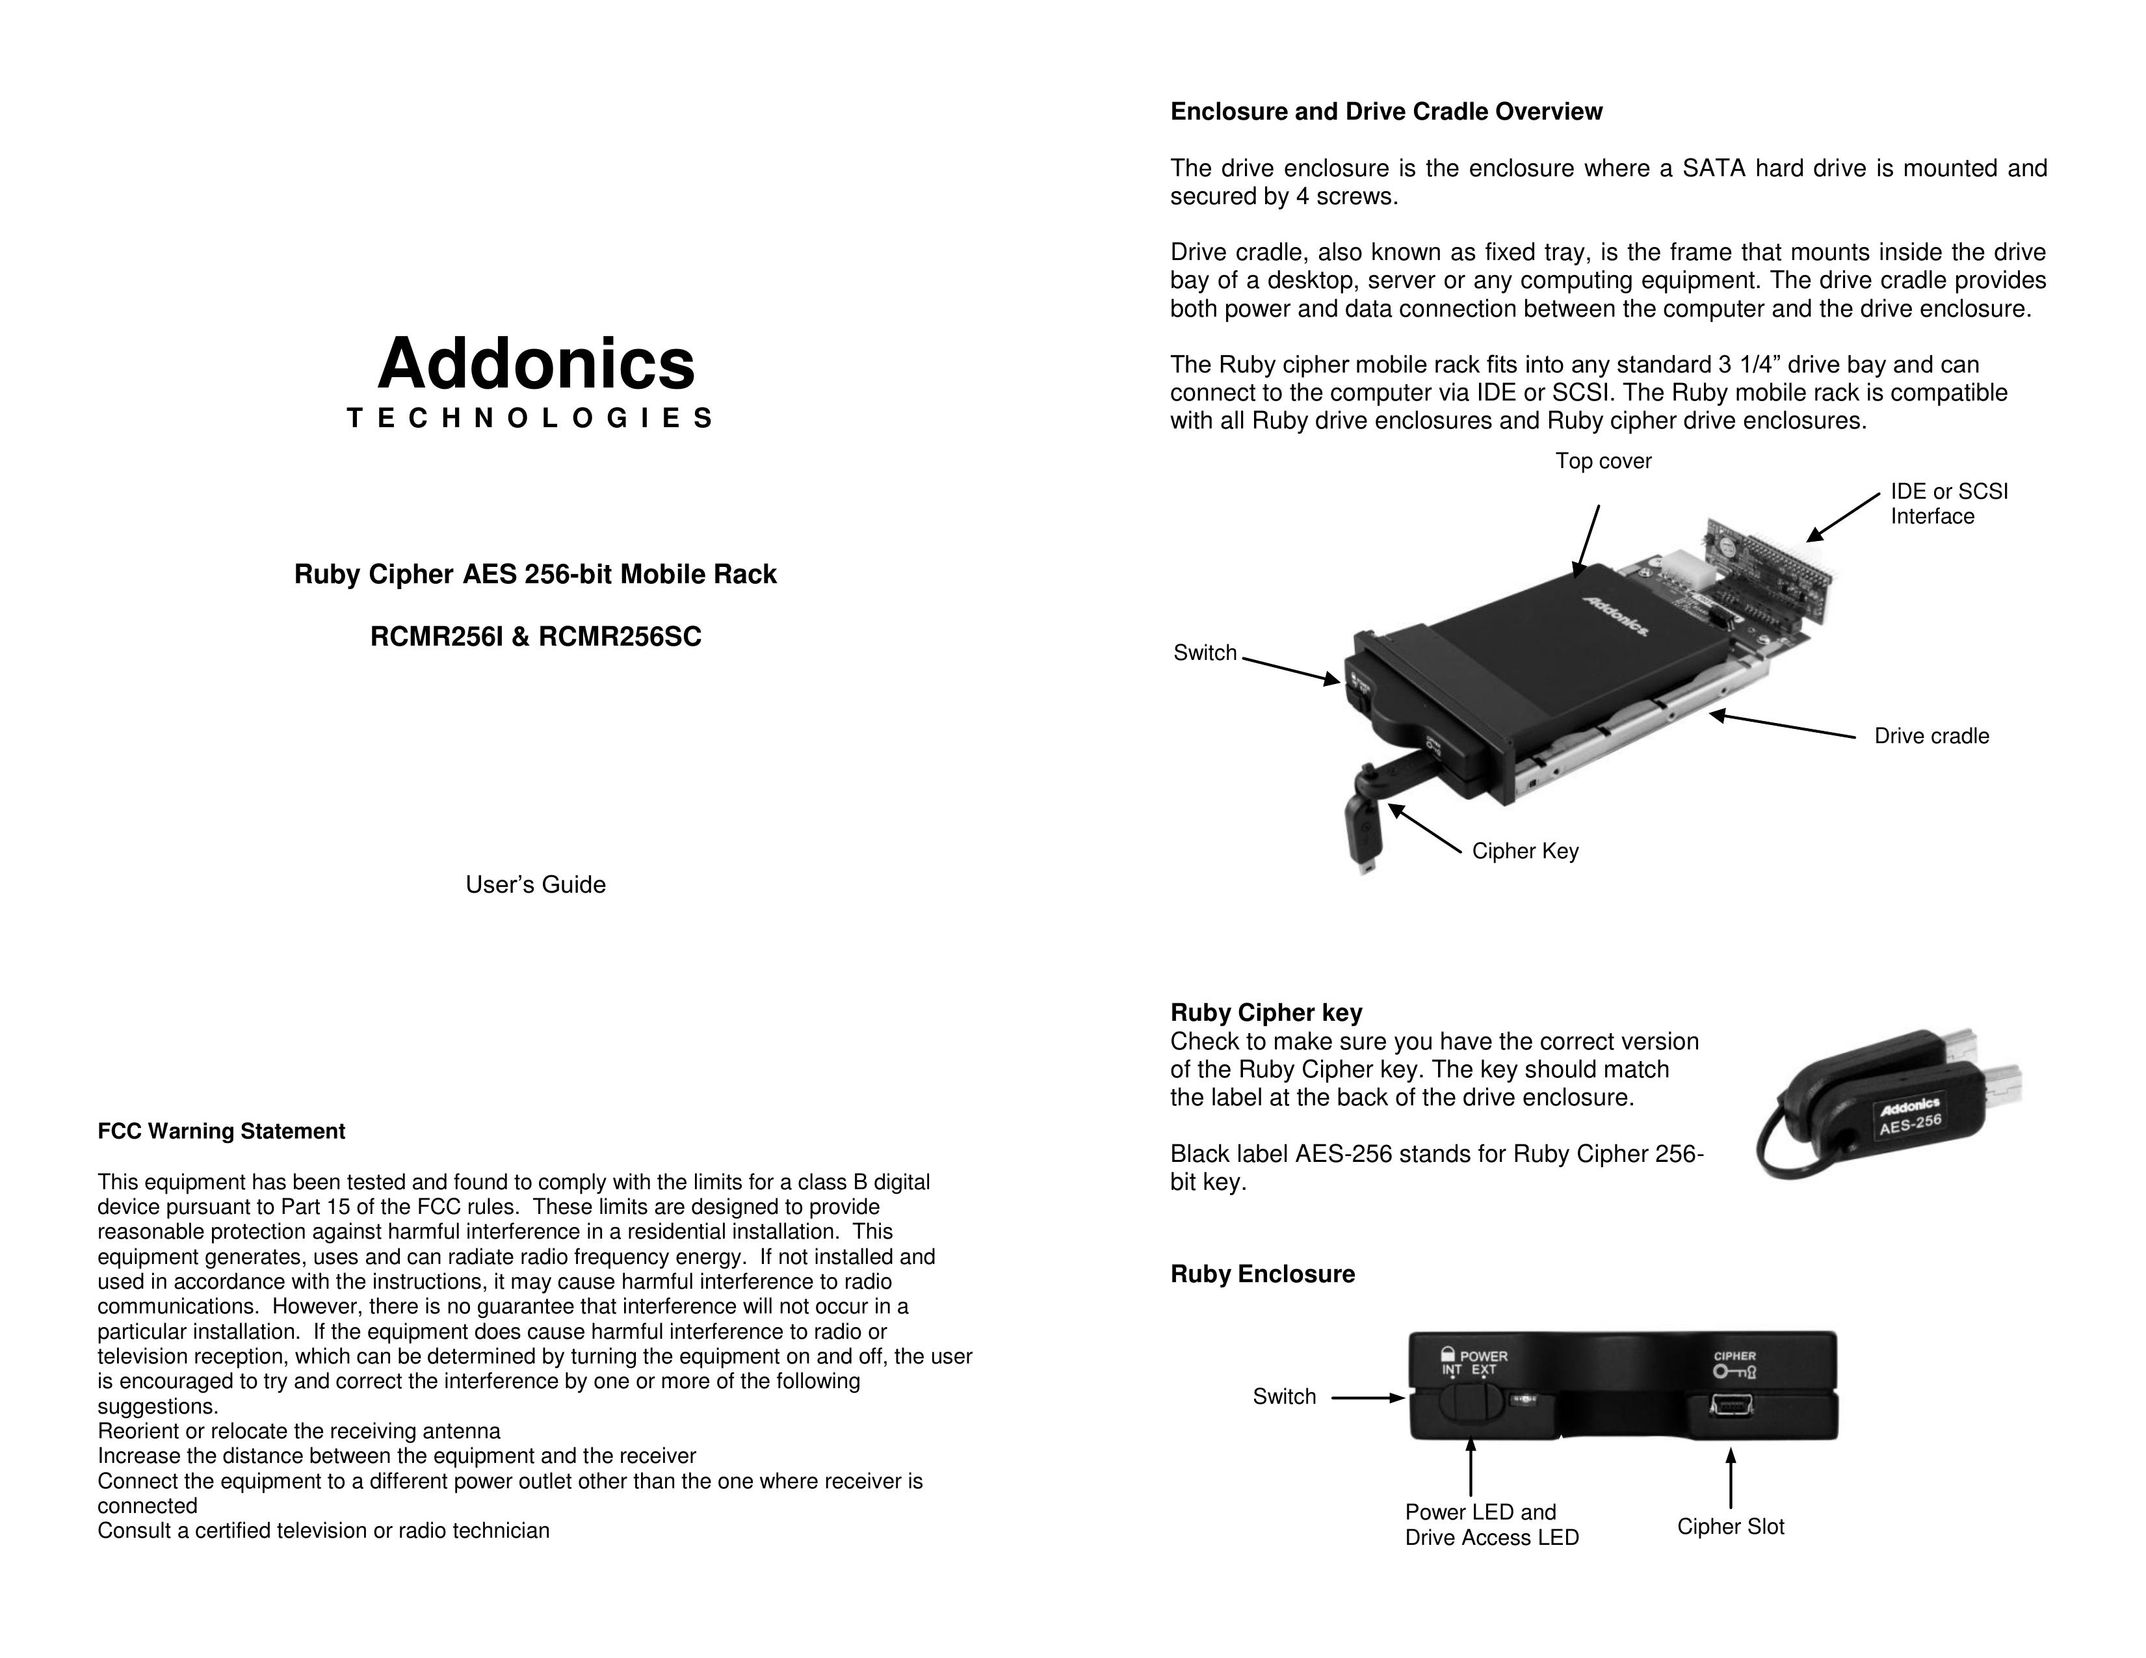 Addonics Technologies RCMR256I Network Card User Manual